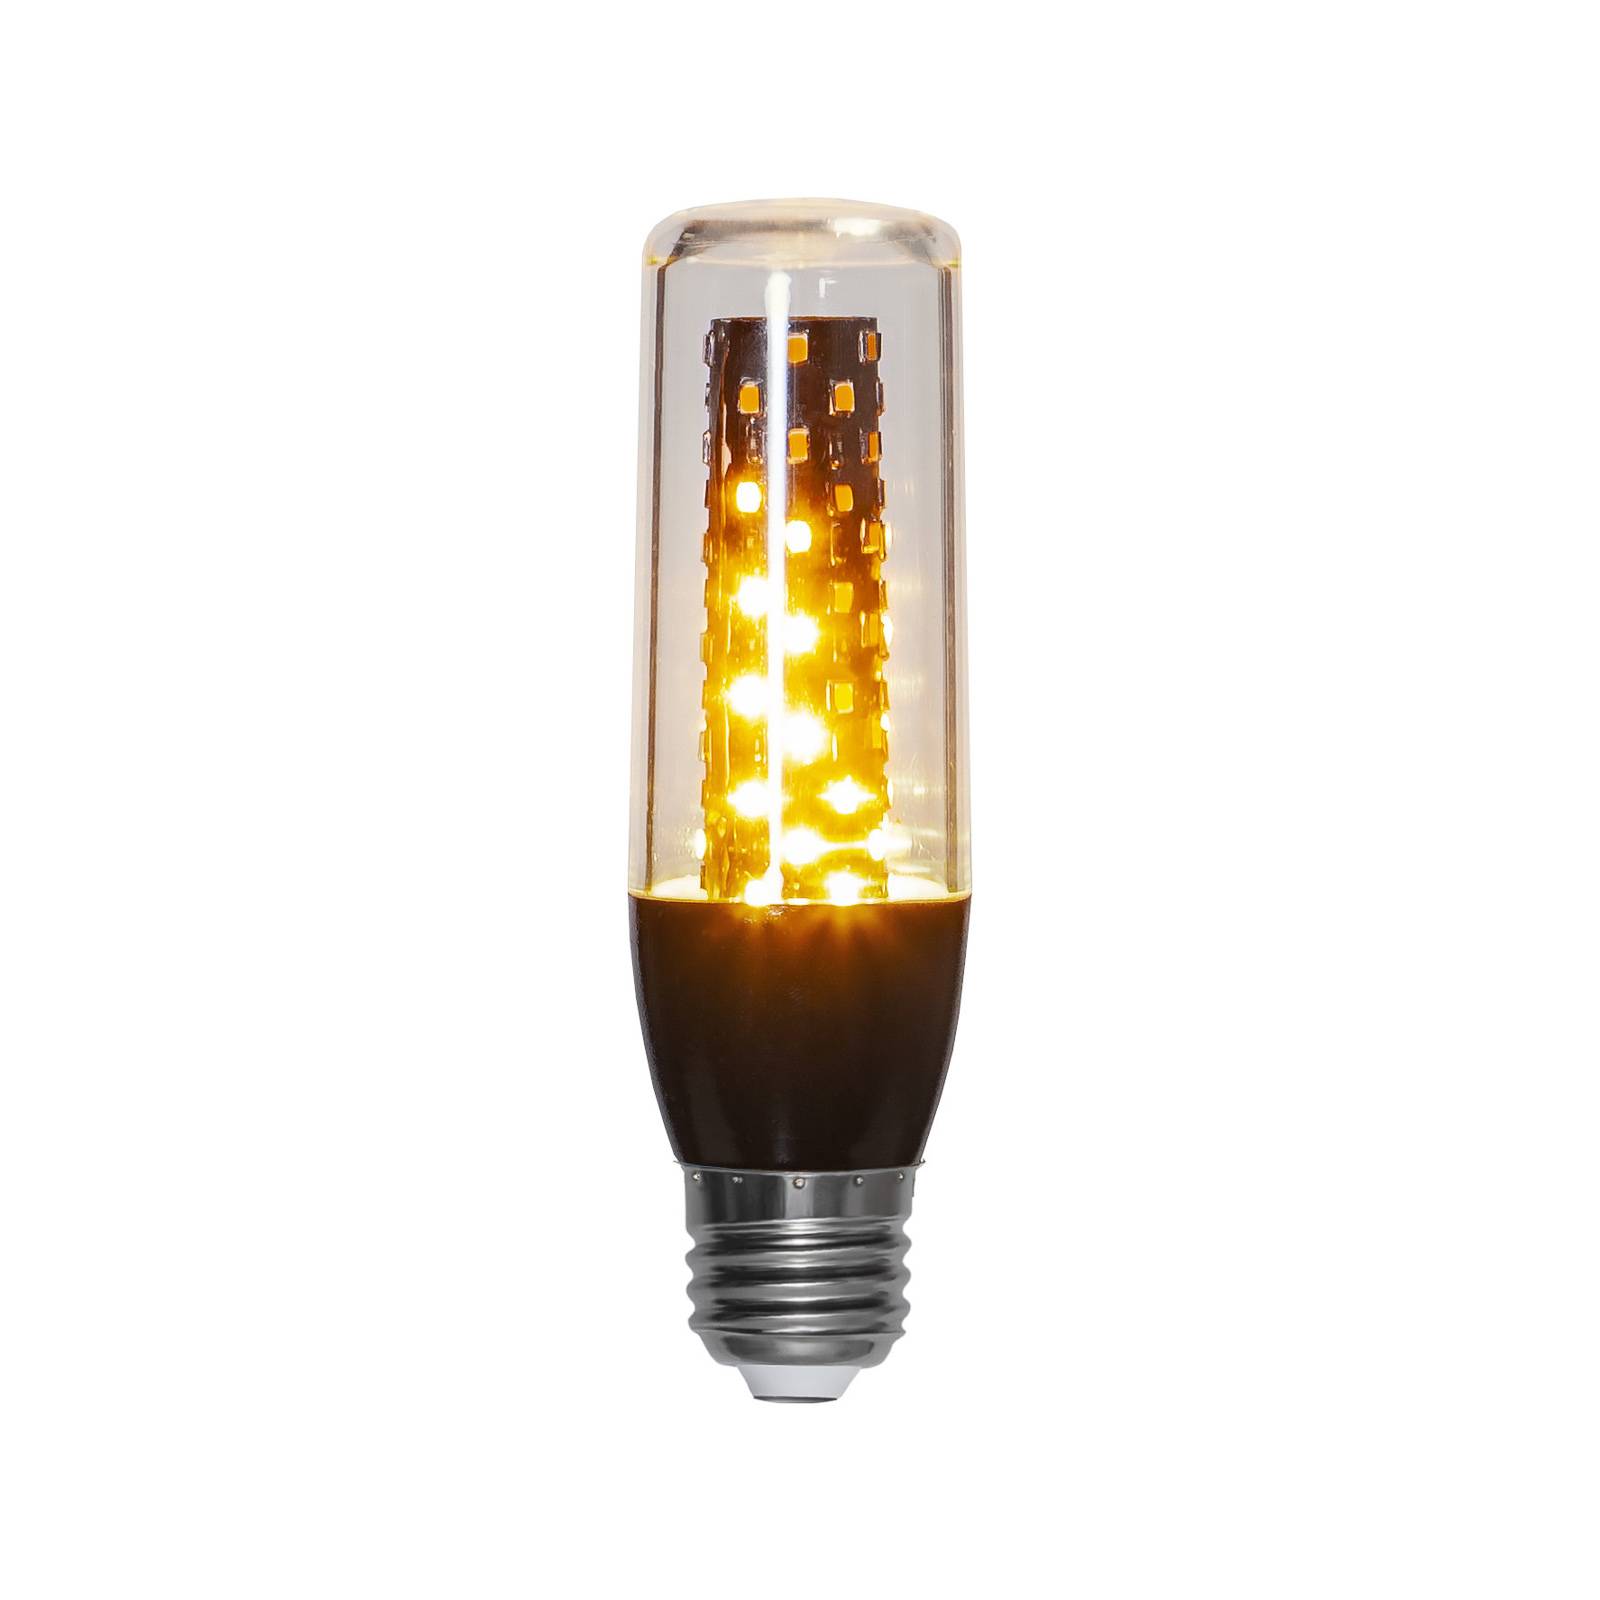 LED lamp Flame Lamp E27 3,3W m. richtingssensor